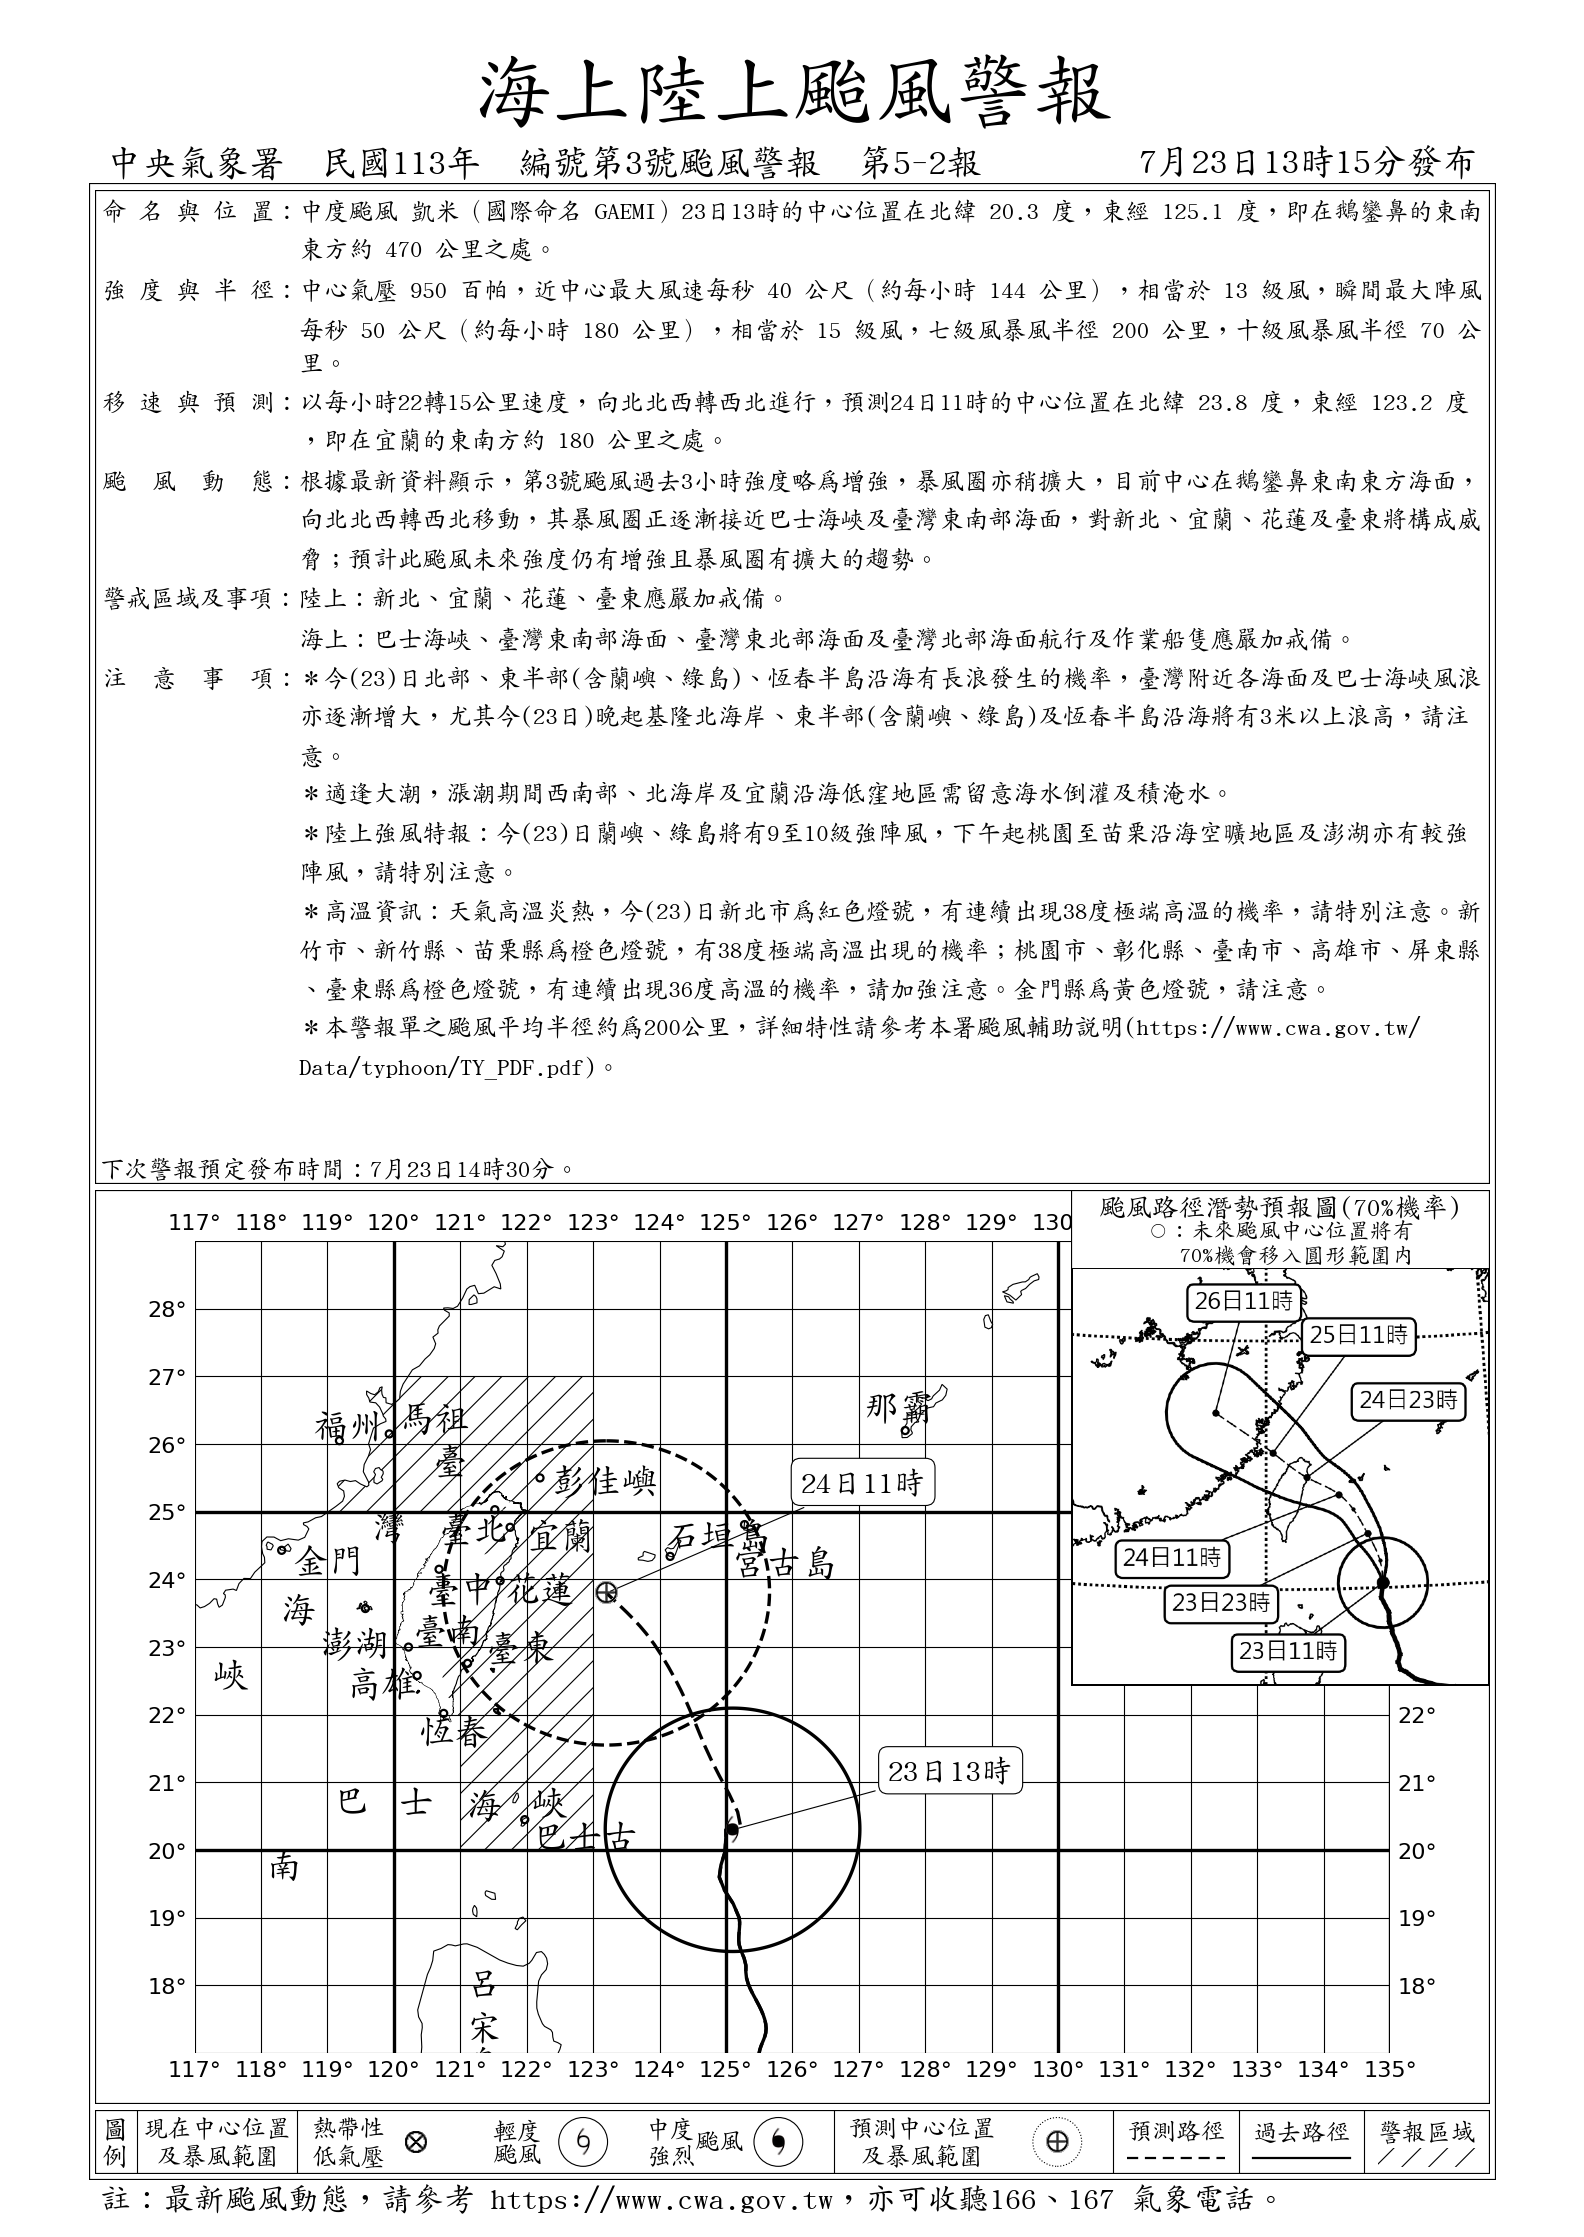 交通部中央氣象署官方網站113年7月23日發布凱米海上陸上颱風警報，請密切注意颱風動向，及早完成防災應變準備。